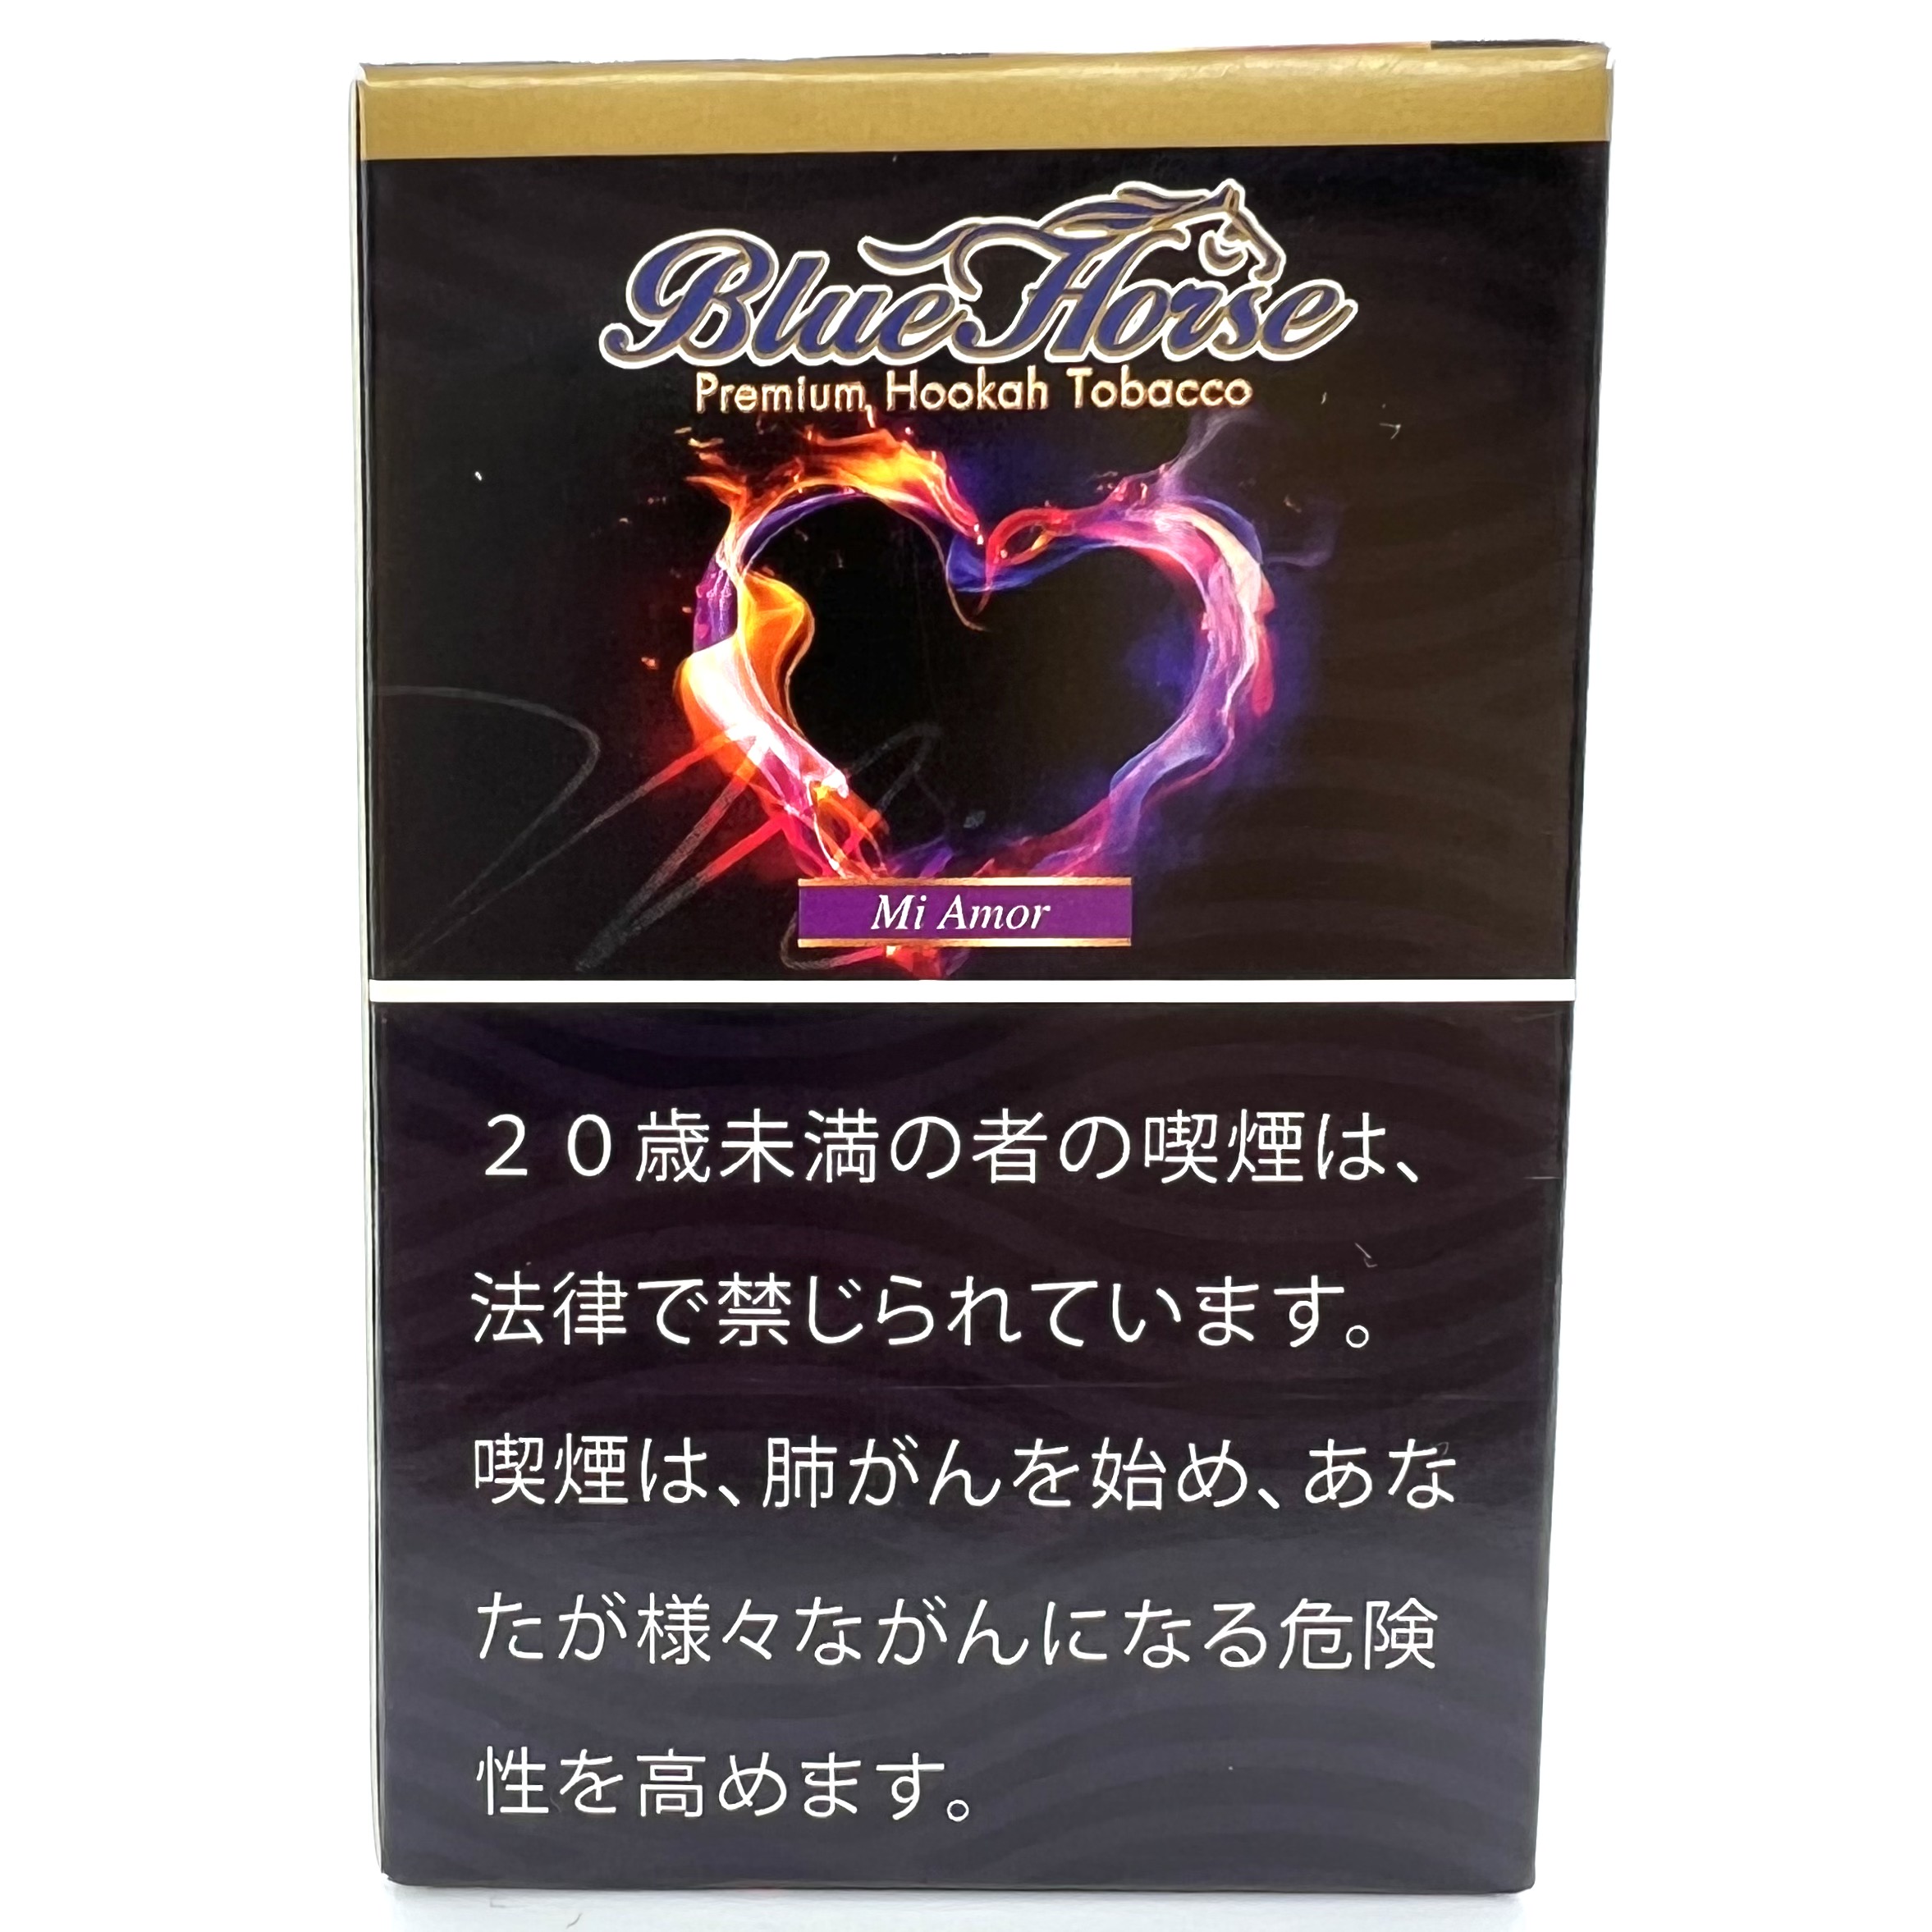 シーシャ 水たばこ 用品 フレーバー販売 Sekiz Tobacco Mi Amor 50g